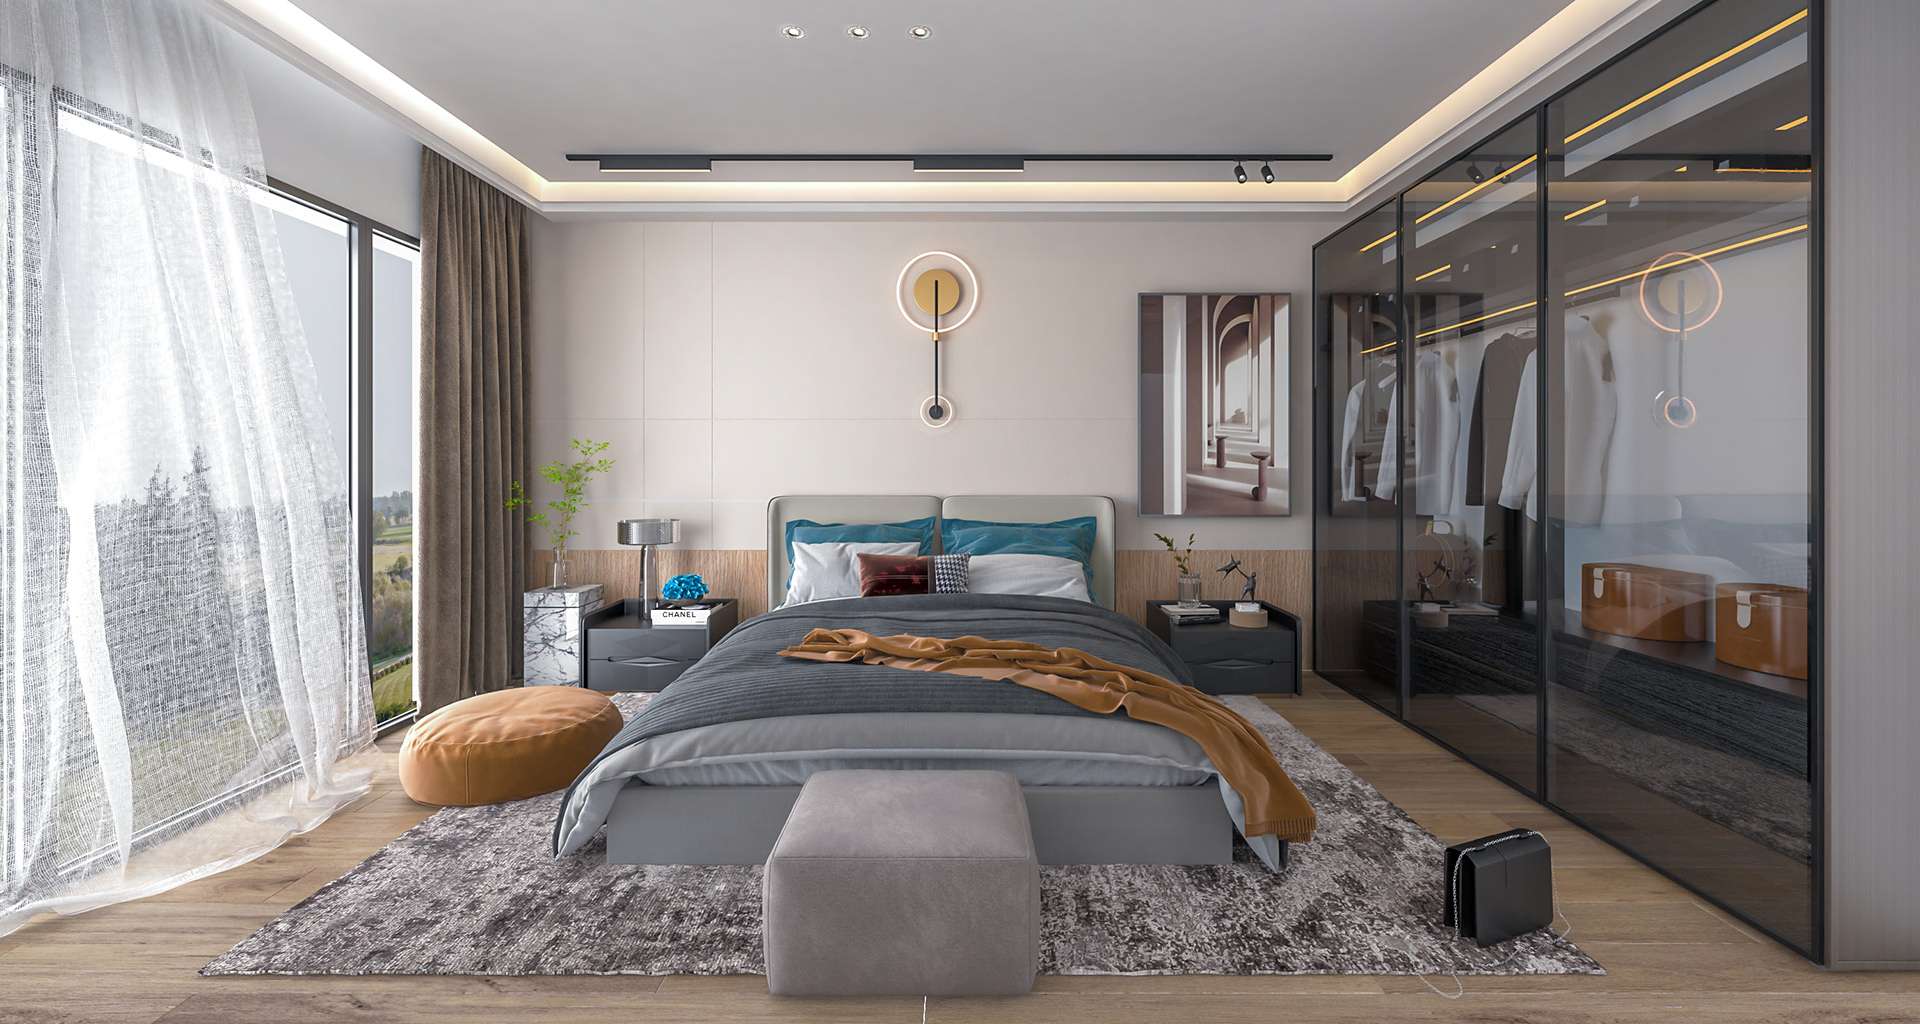 Giường có thể được thiết kế đơn giản nhưng tinh tế, làm nổi bật điểm nhấn cho phòng ngủ